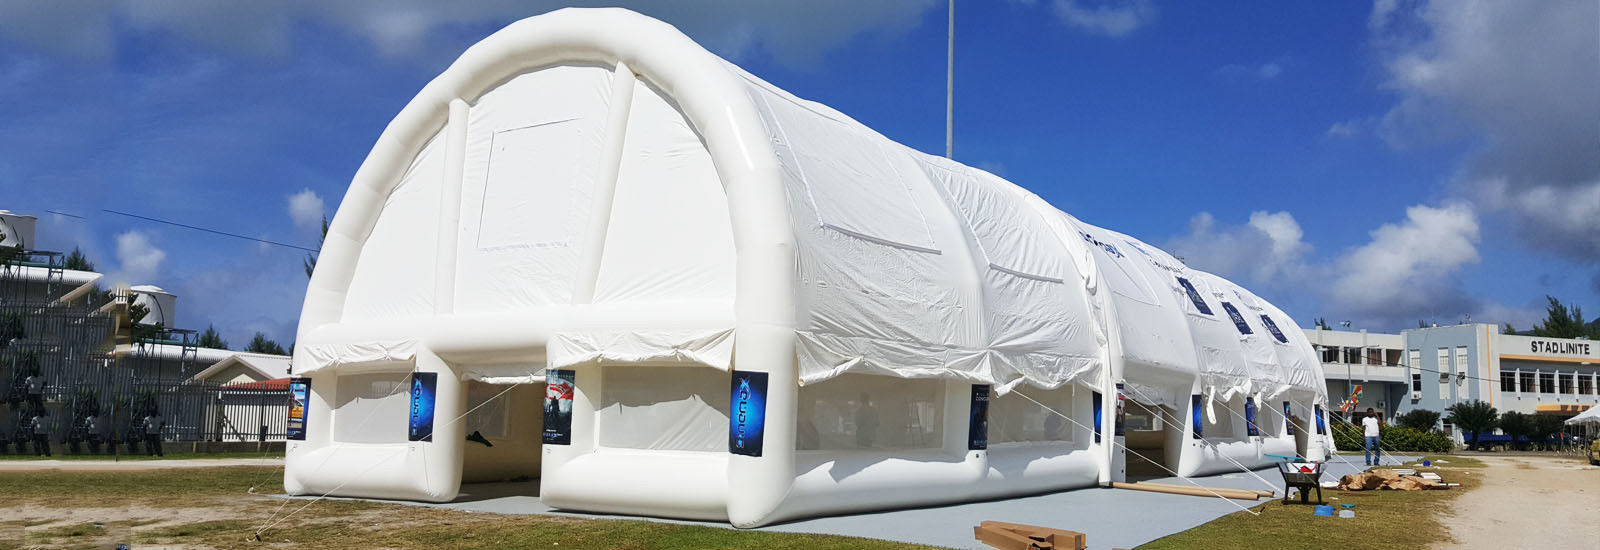 풍선 이벤트 텐트